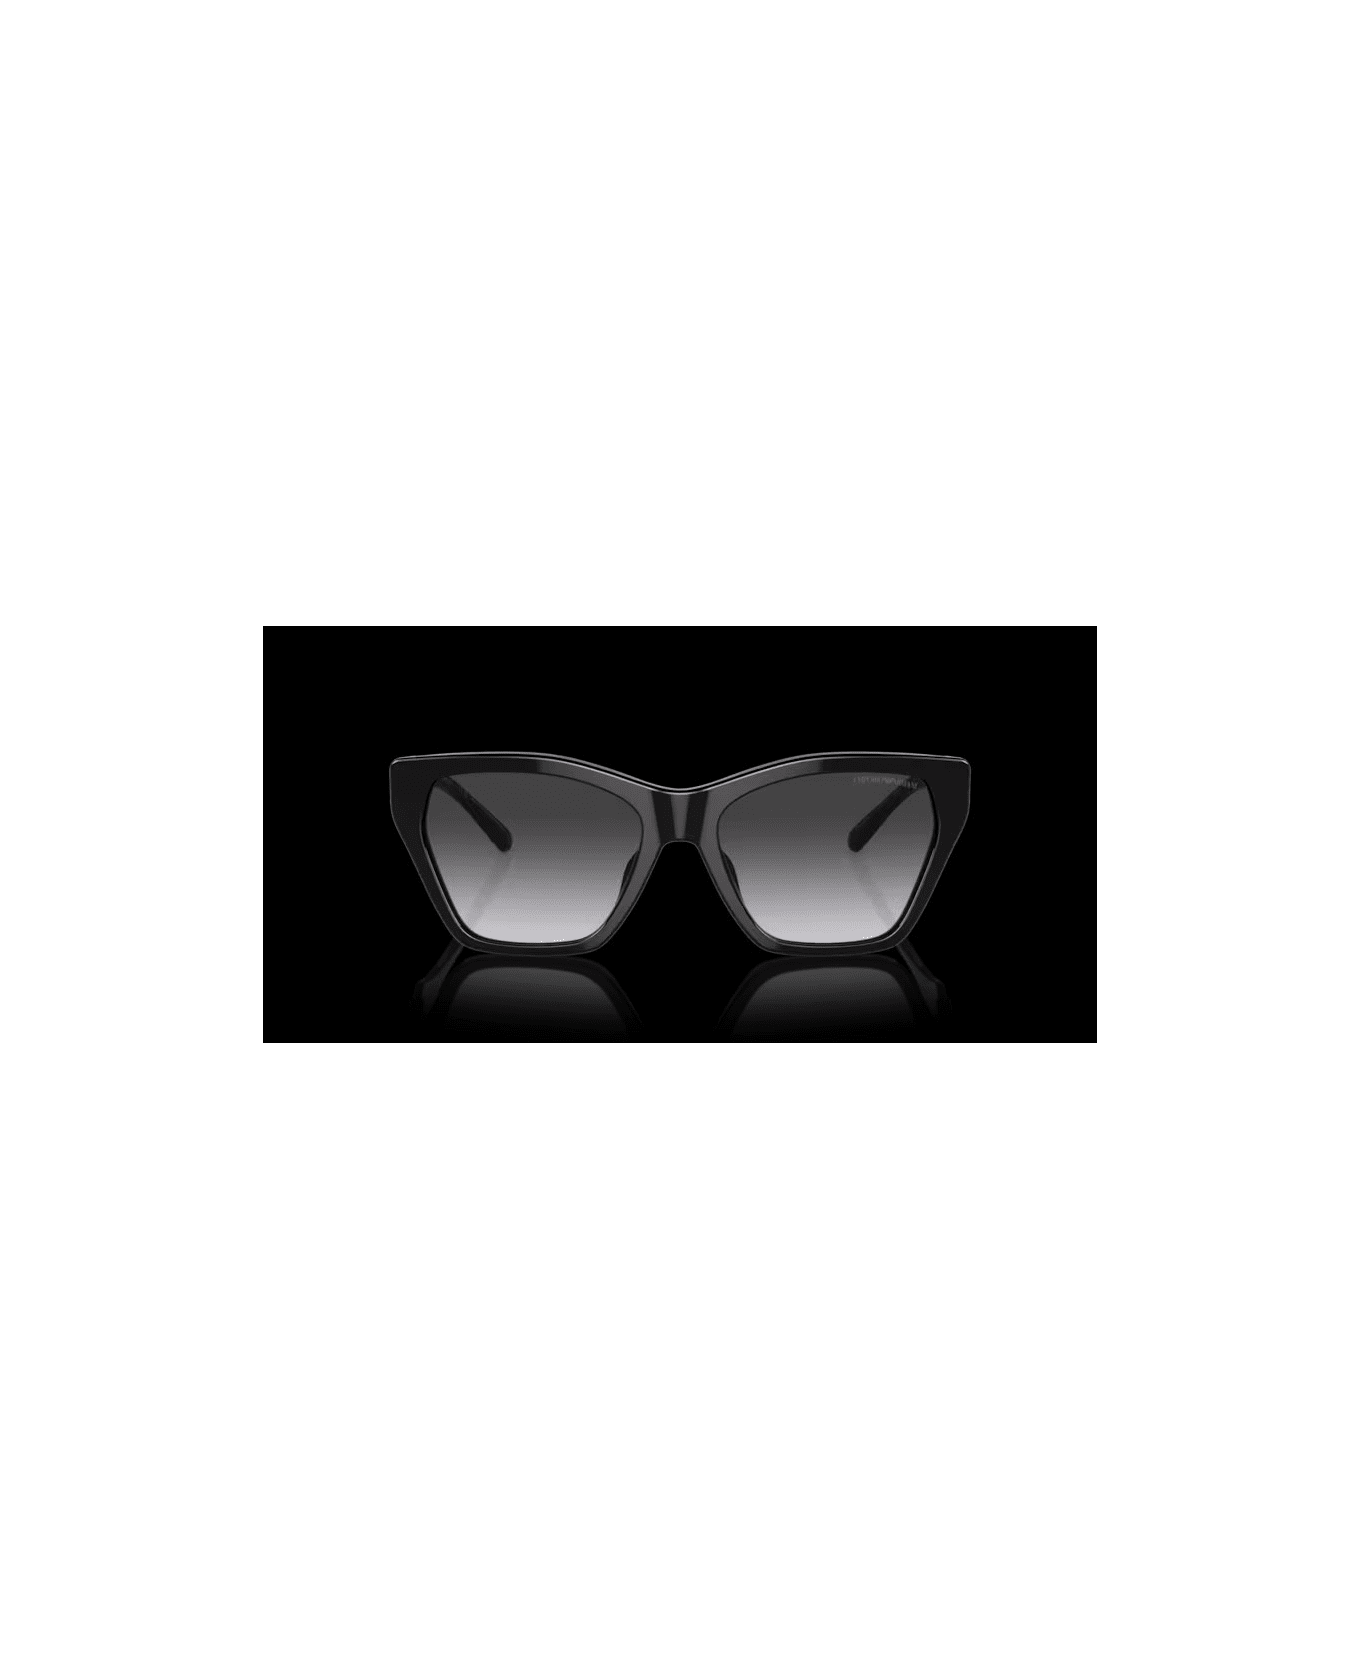 Emporio Armani EA4203S 5417/8G Sunglasses - Nero サングラス